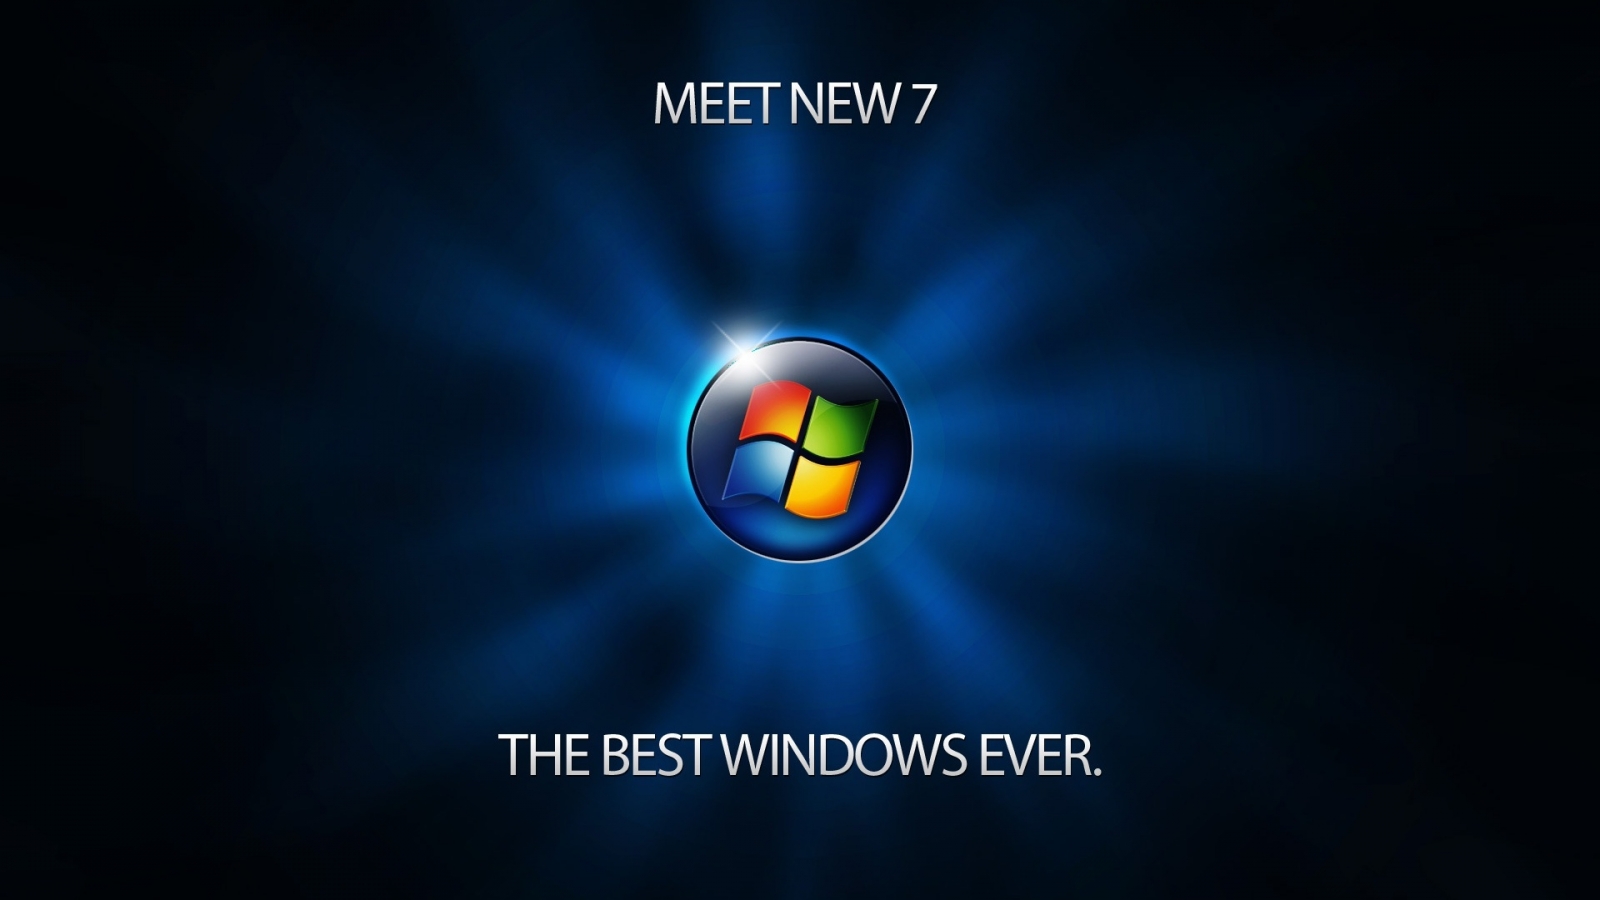 Meet Windows 7 for 1600 x 900 HDTV resolution